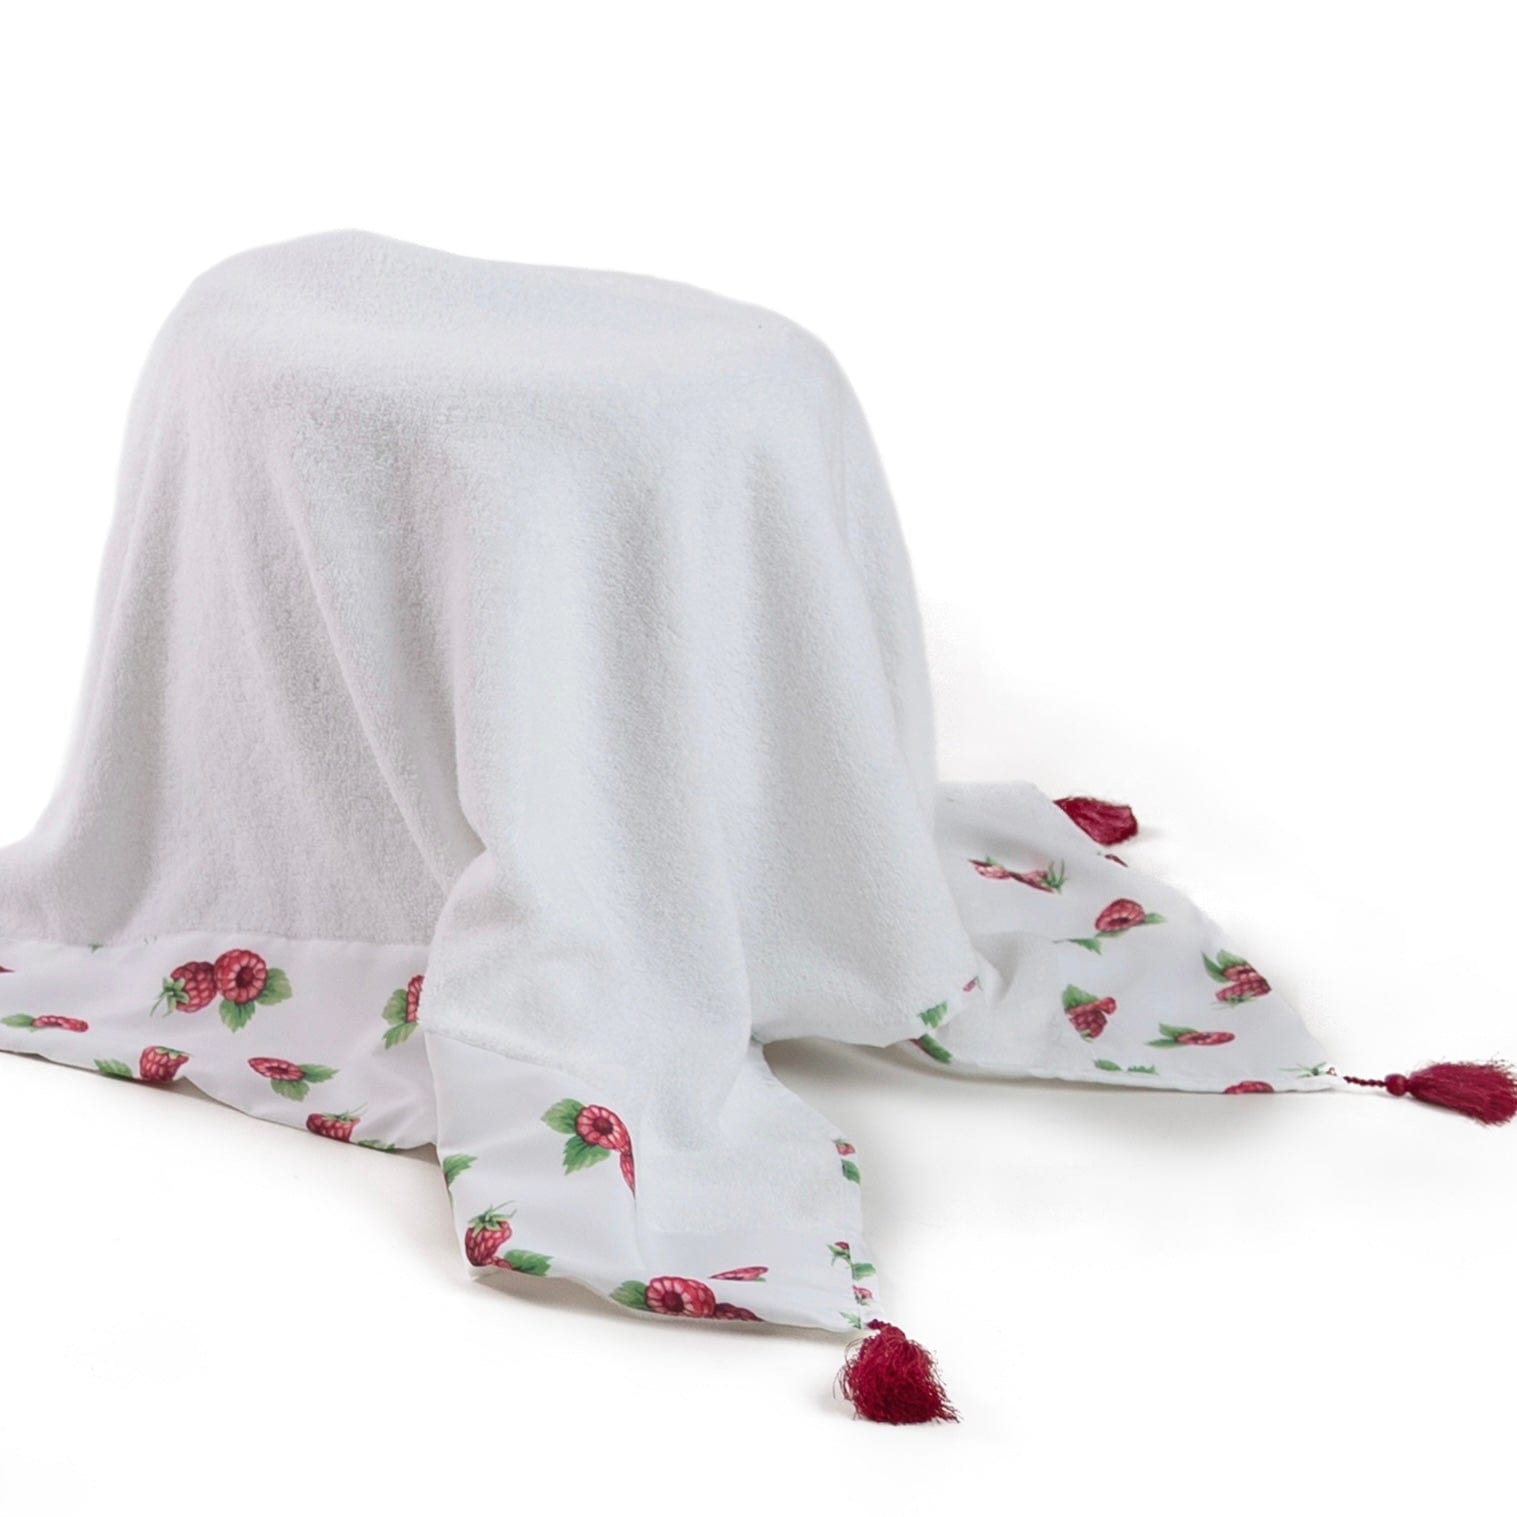 MEIA PATA - Raspberries Print Towel - White